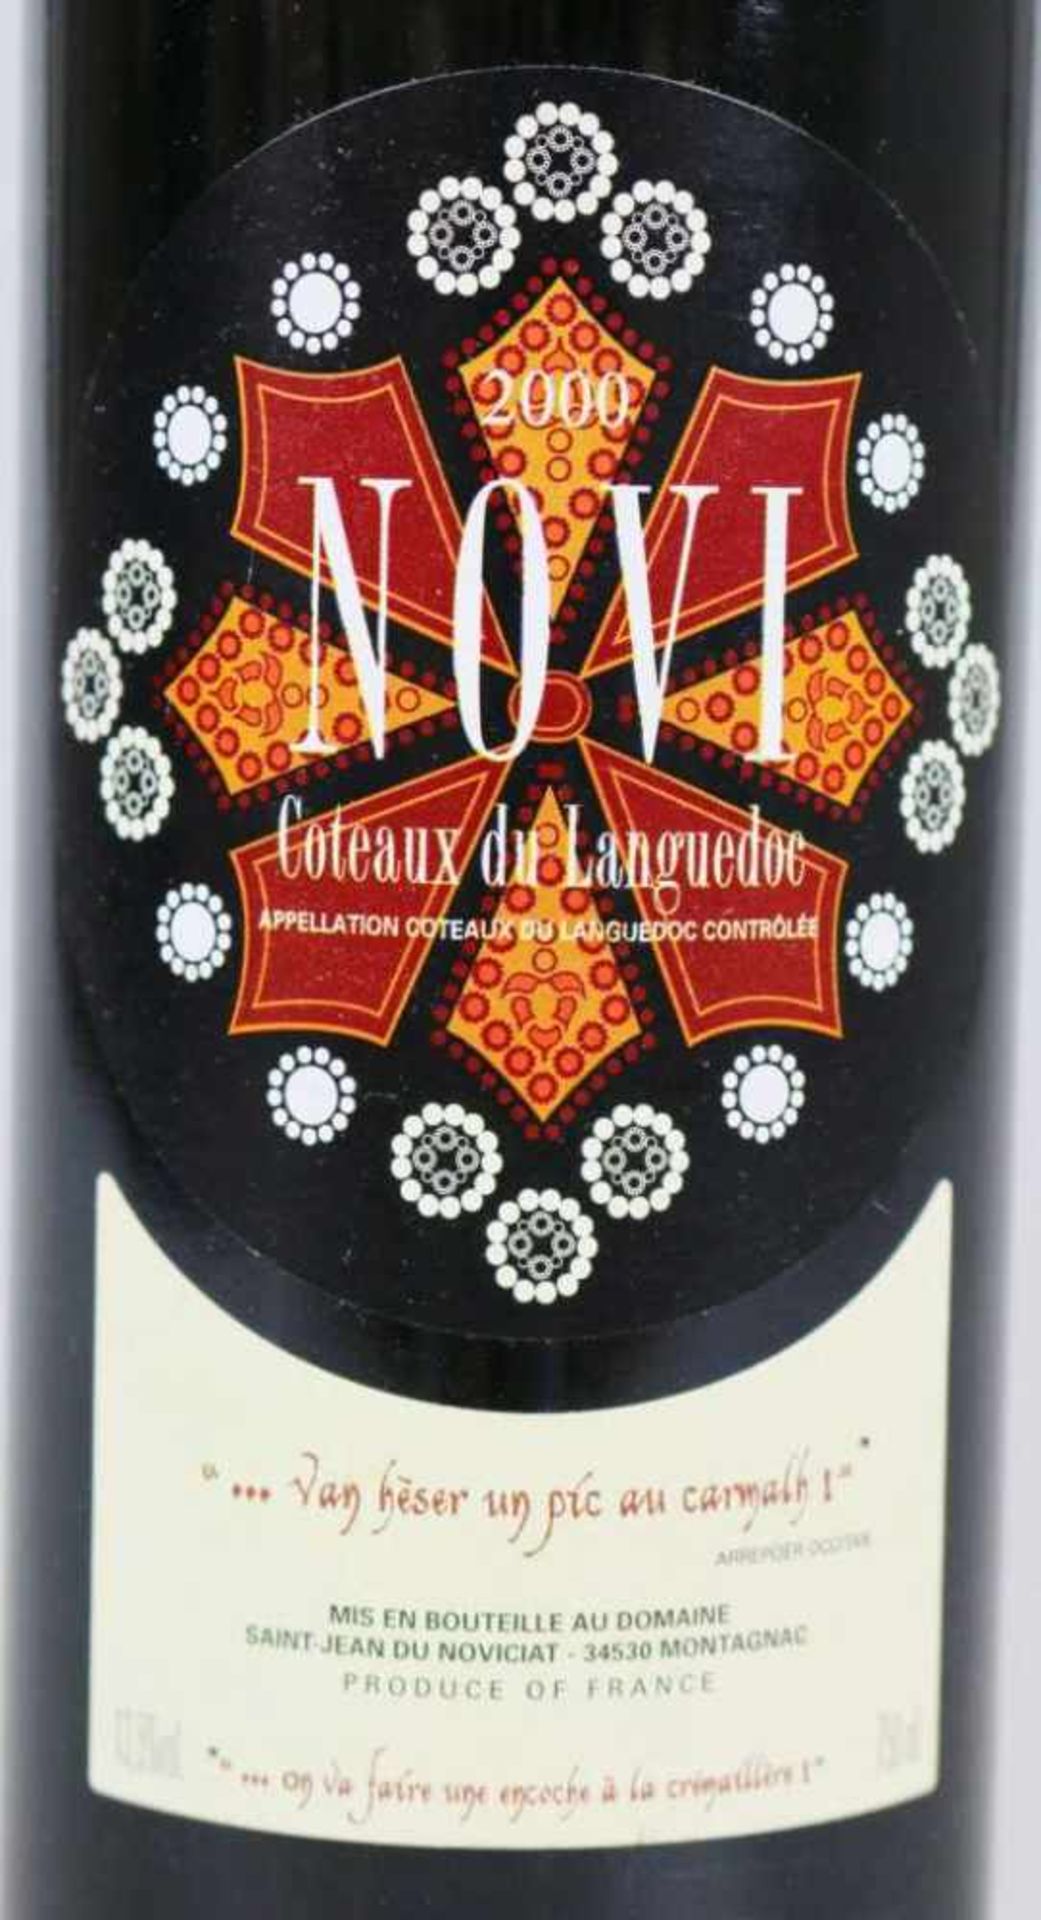 Rotwein, 6 Flaschen Novi, Domaine Saint-Jean du Novicat, Coteaux du Languedoc, 2000, 0,75 L. Der - Image 3 of 4